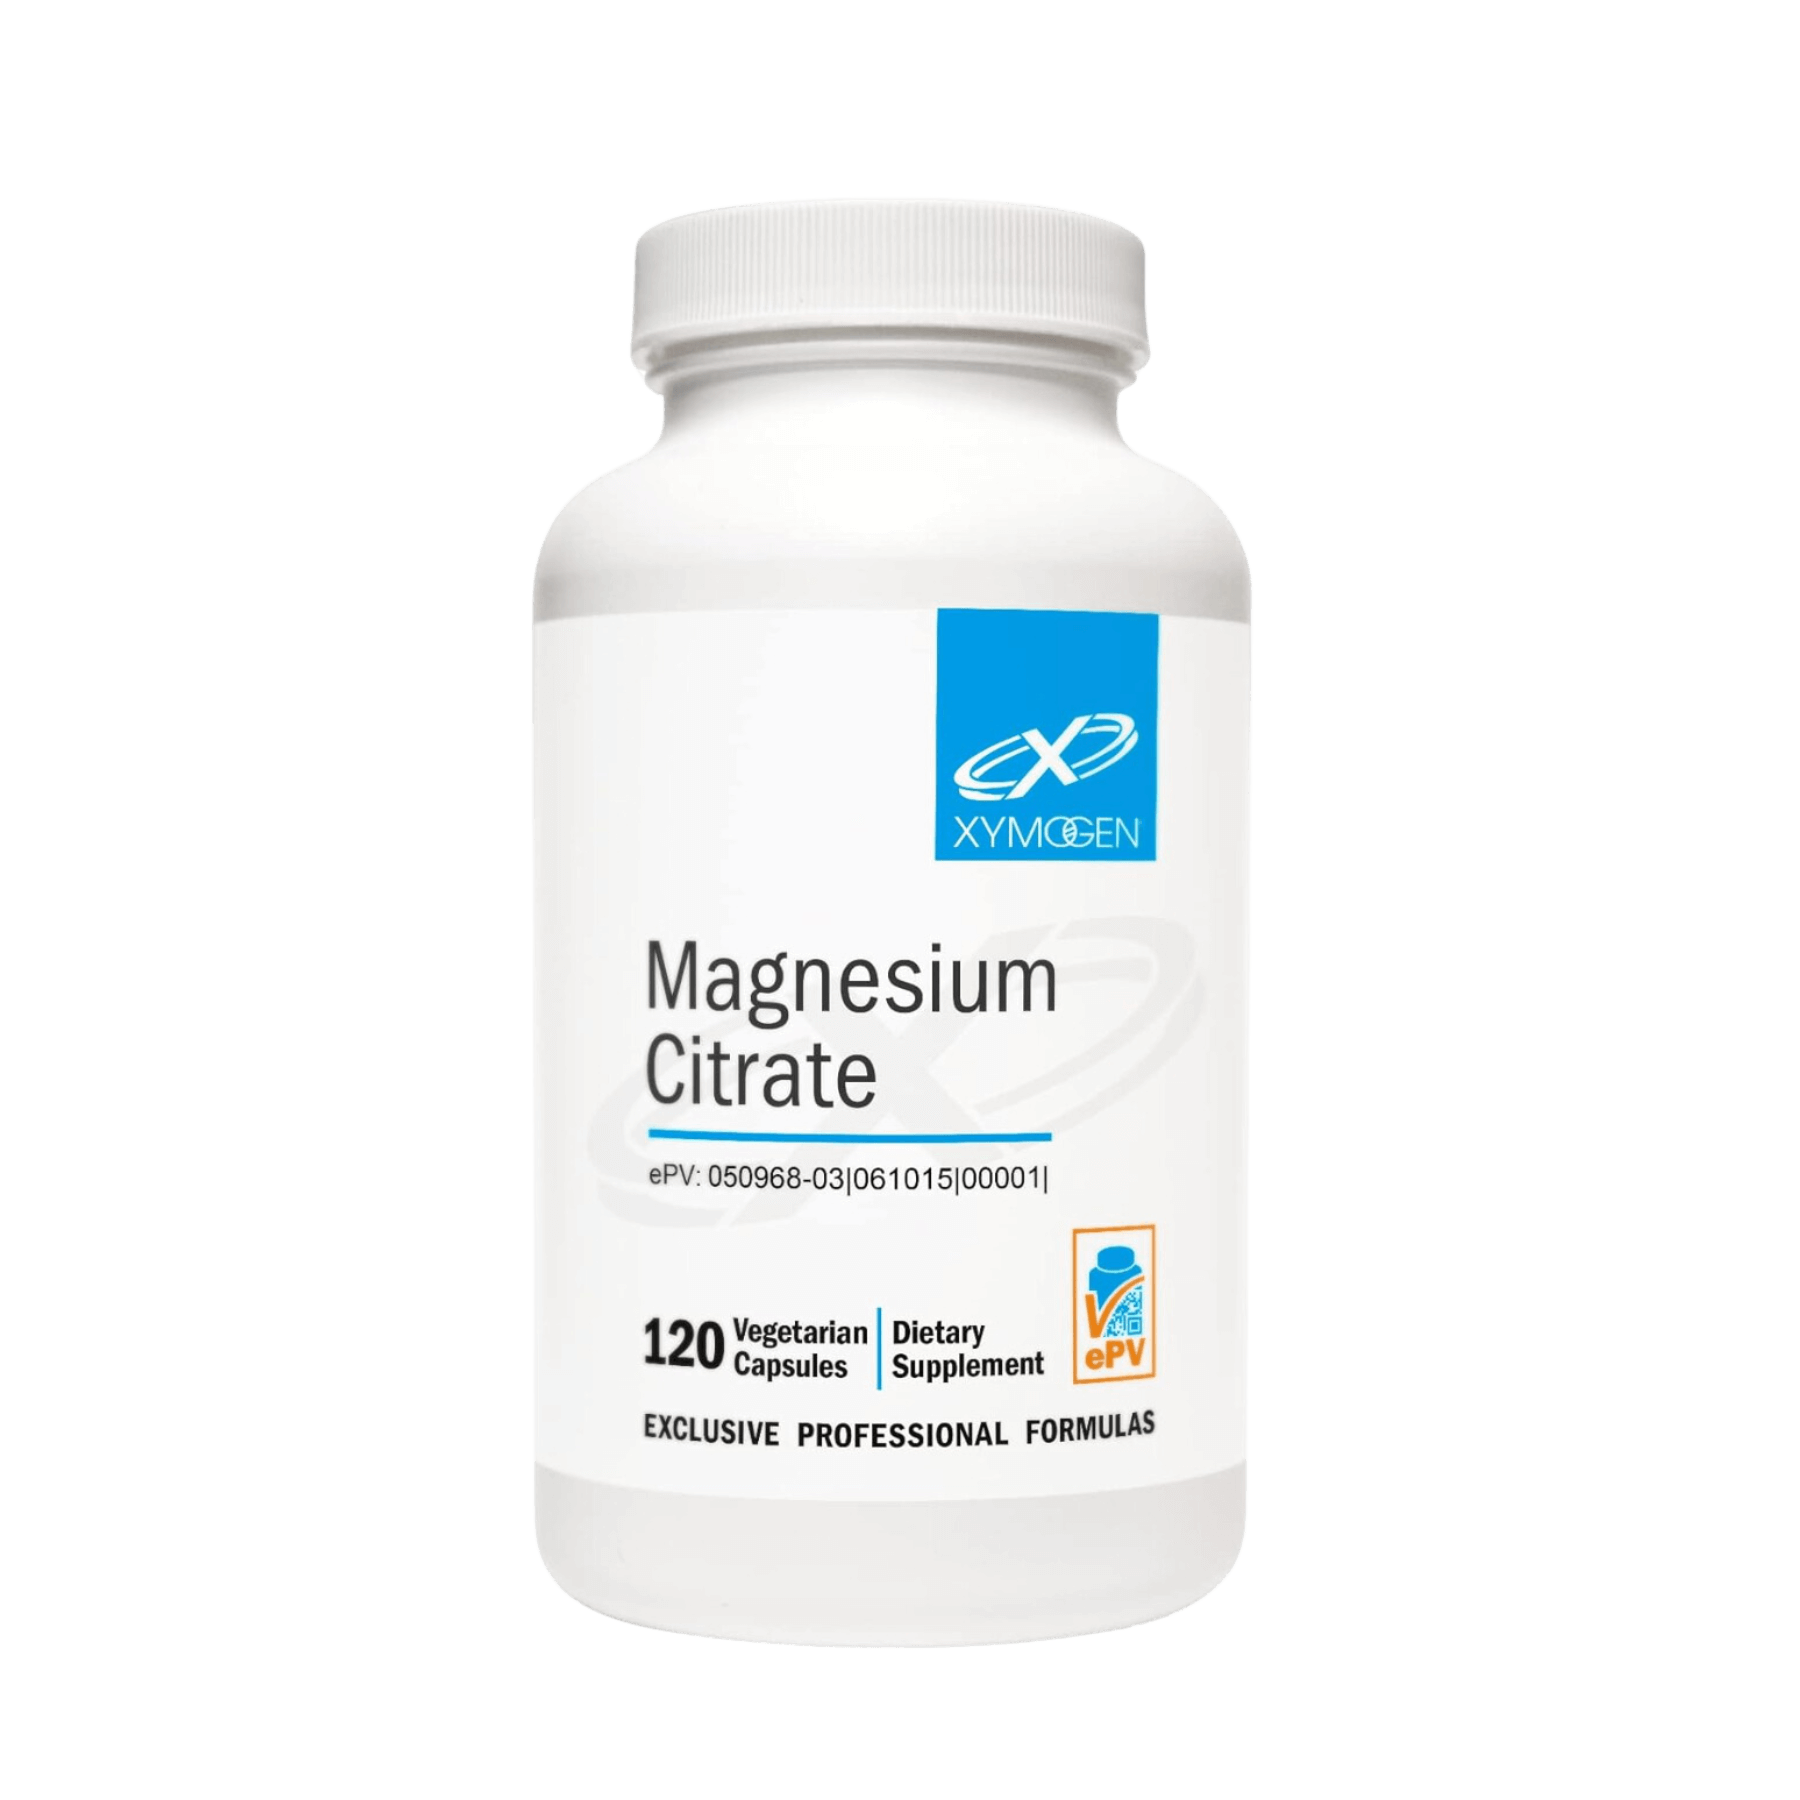 Xymogen Magnesium Citrate Capsules